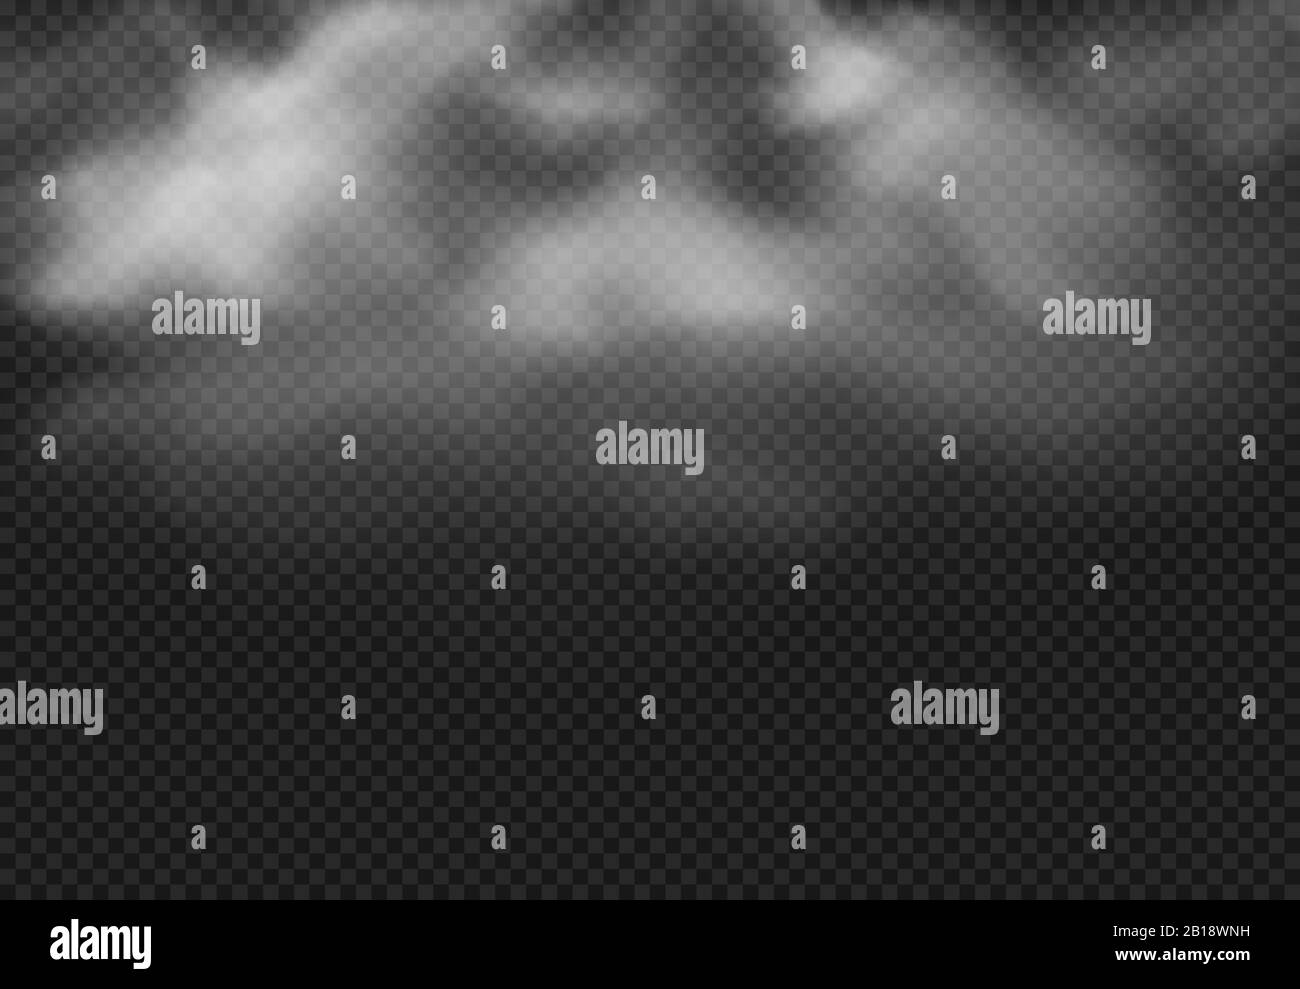 Nube de humo. Nubes de niebla, niebla ahumada y efecto nublado realista ilustración vectorial aislada Ilustración del Vector